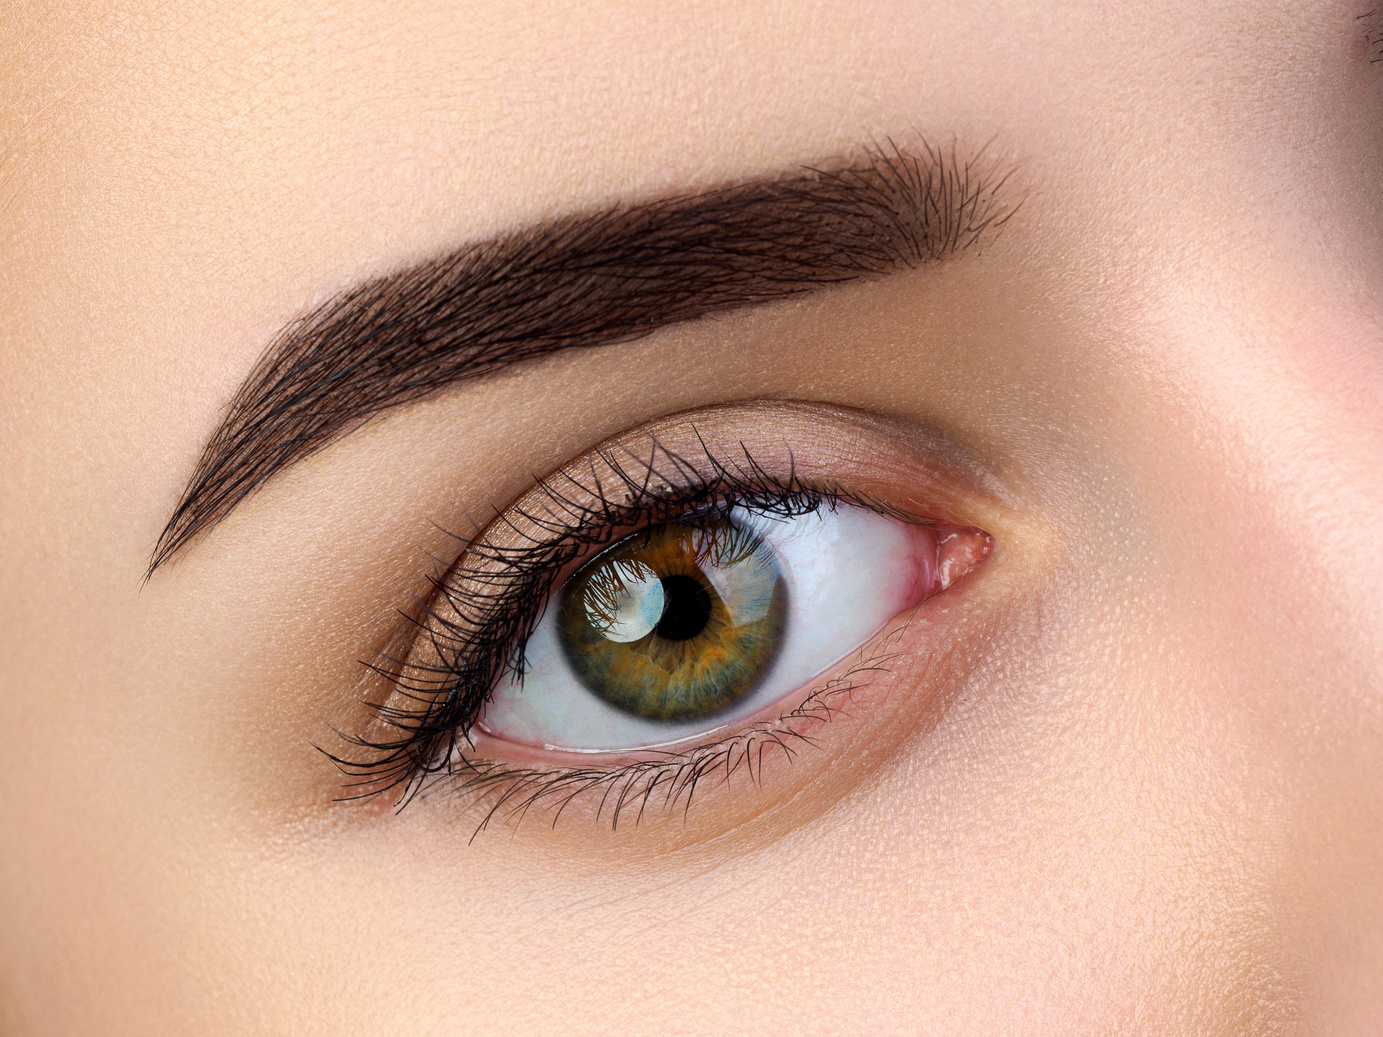 Woman's Eyes with Makeup Closeup